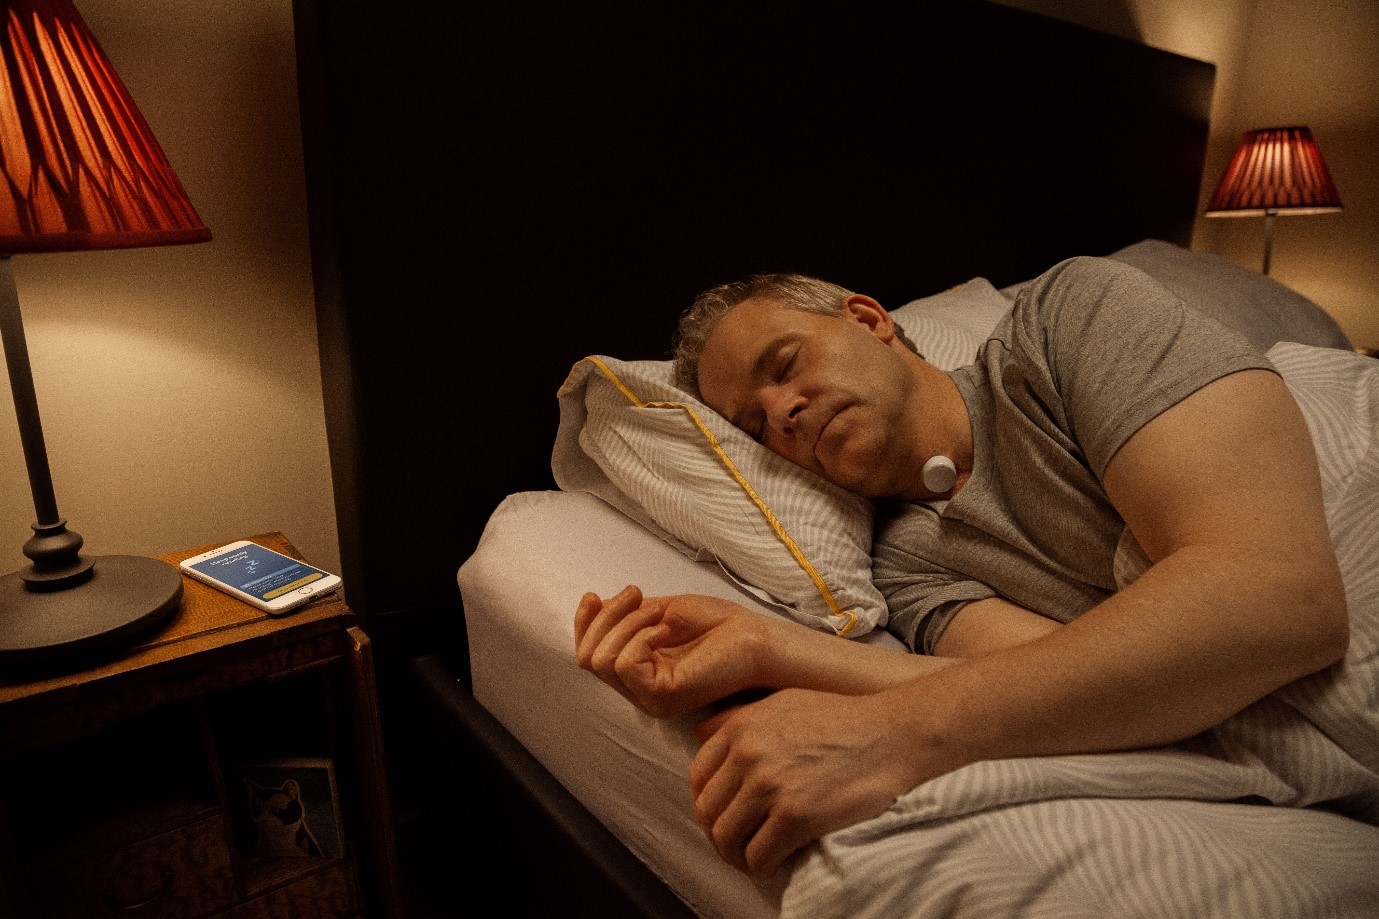 El dispositivo AcuPebble de Acurable monitoriza de forma sencilla y cómoda la apnea del sueño.